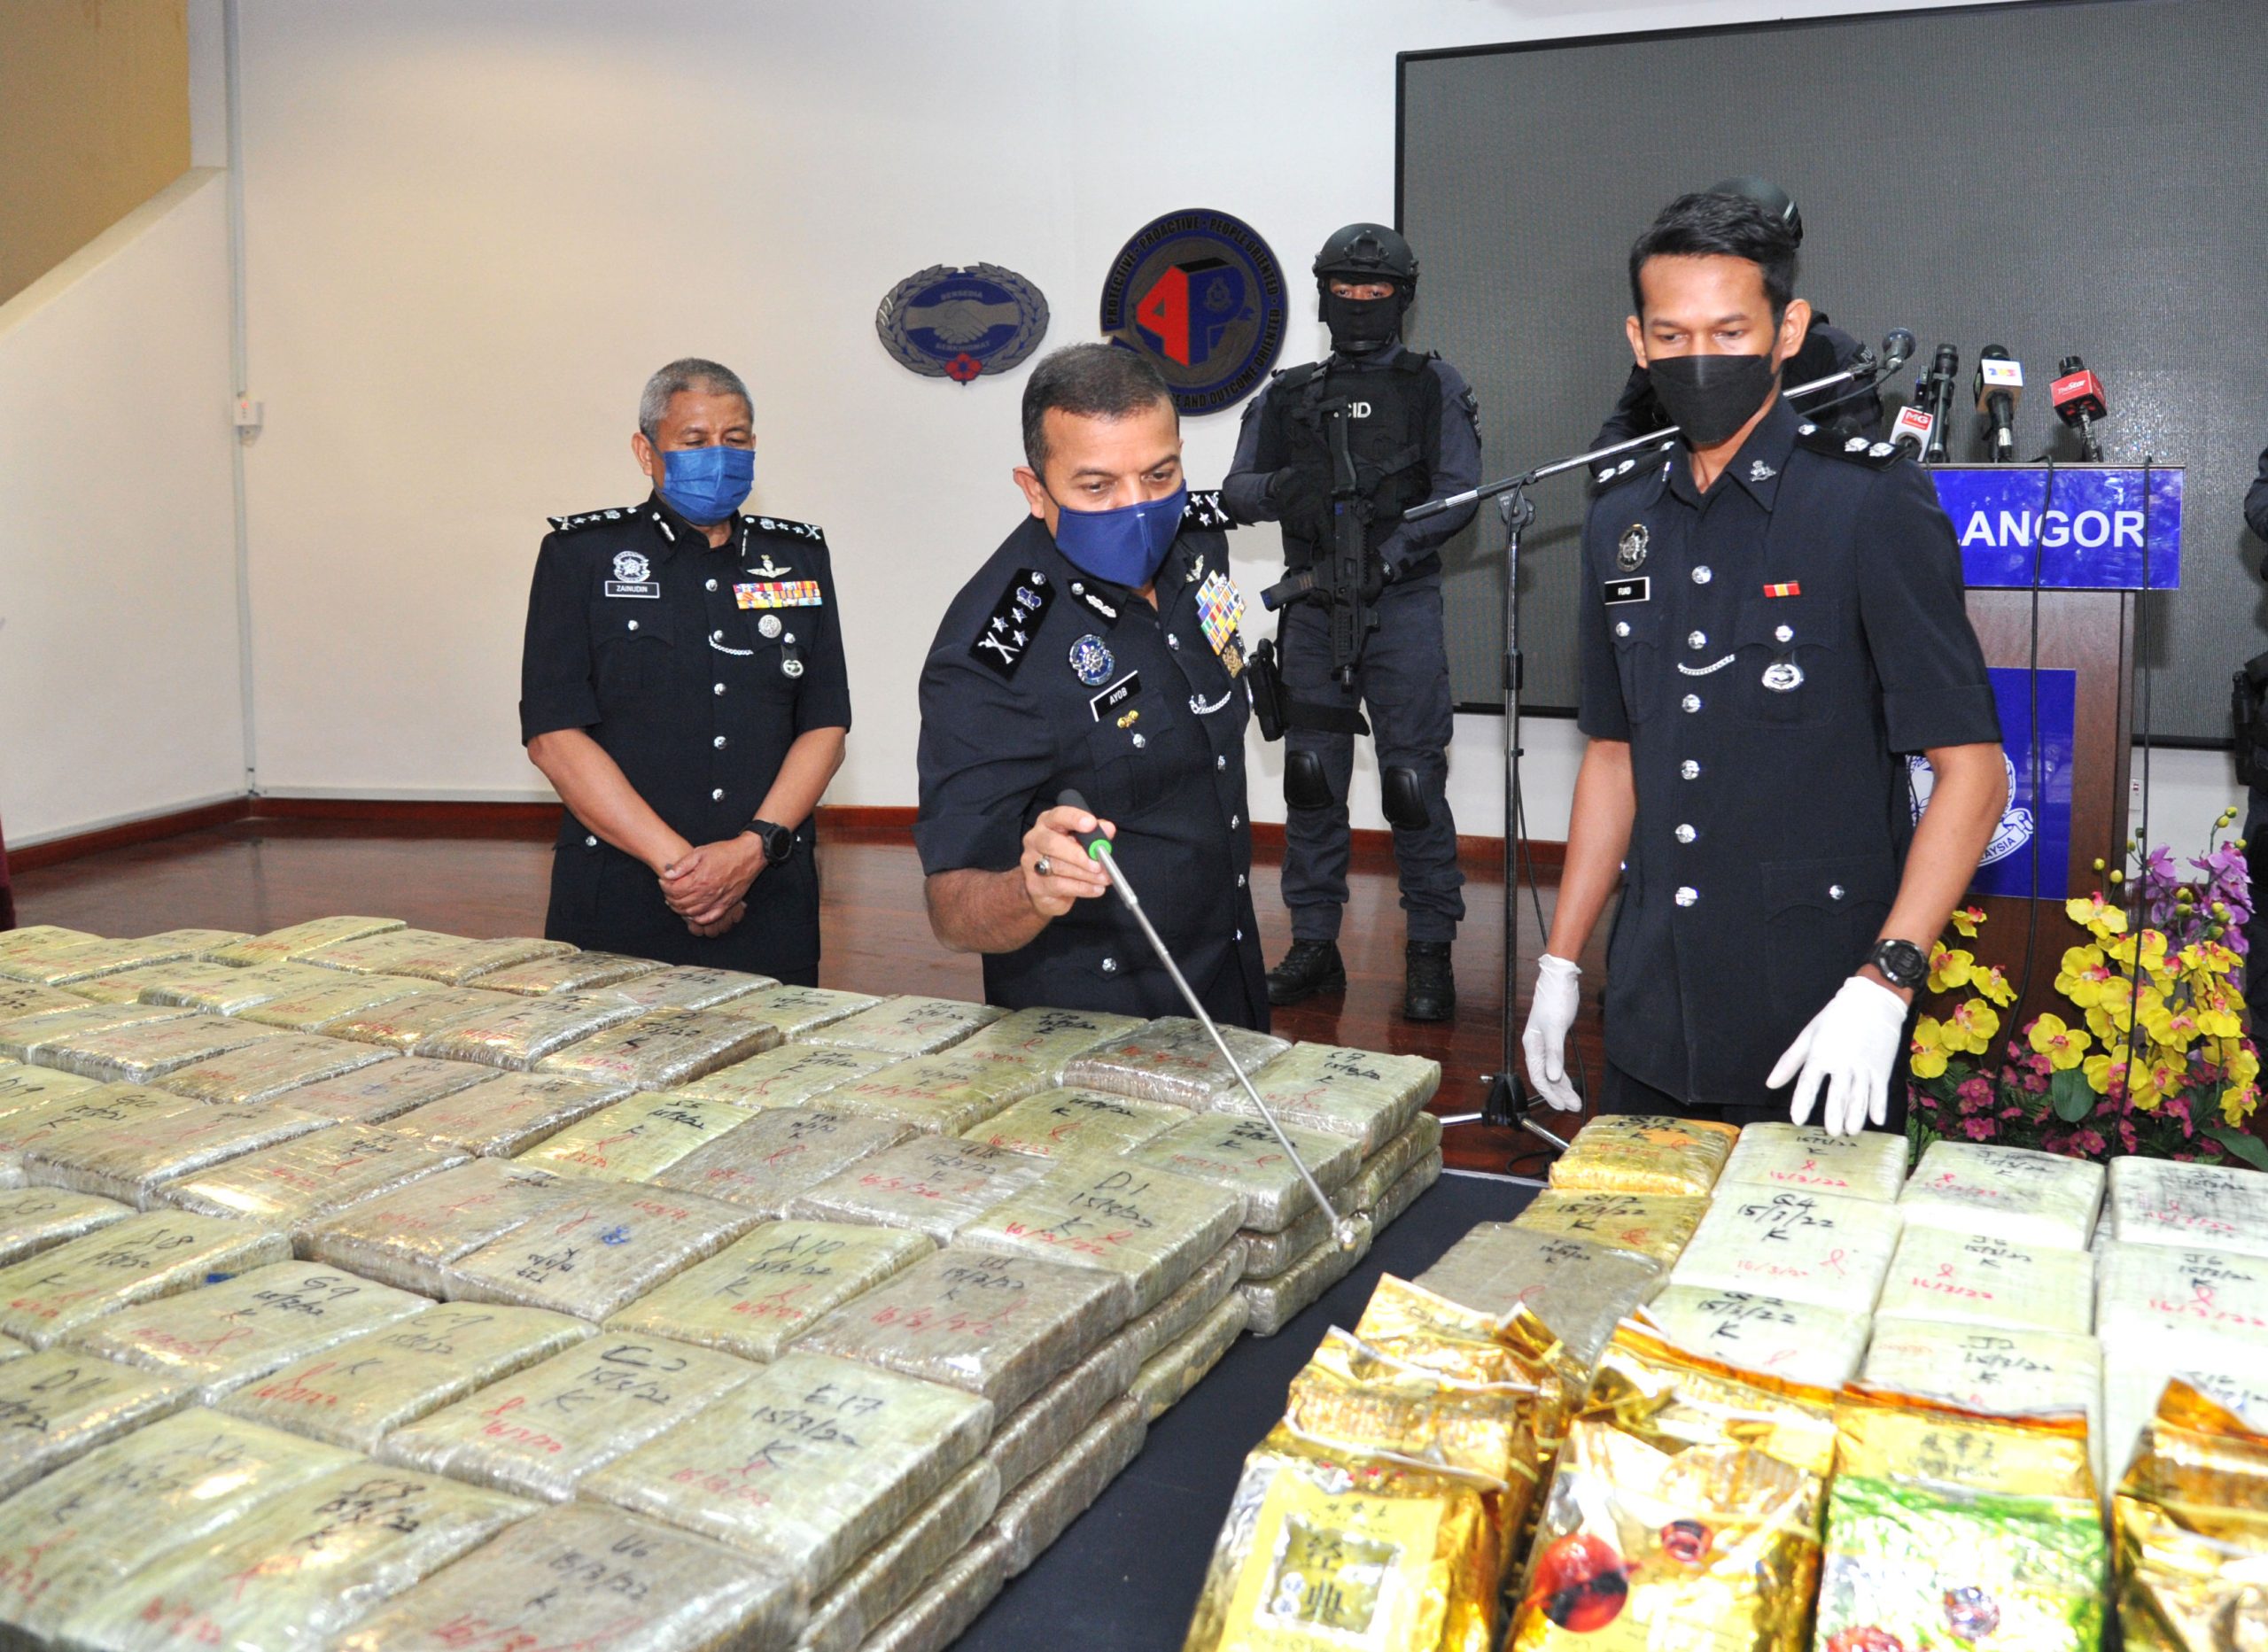 菜鸟毒贩2人运毒入境贩售被捕·起153万令吉大麻和冰毒